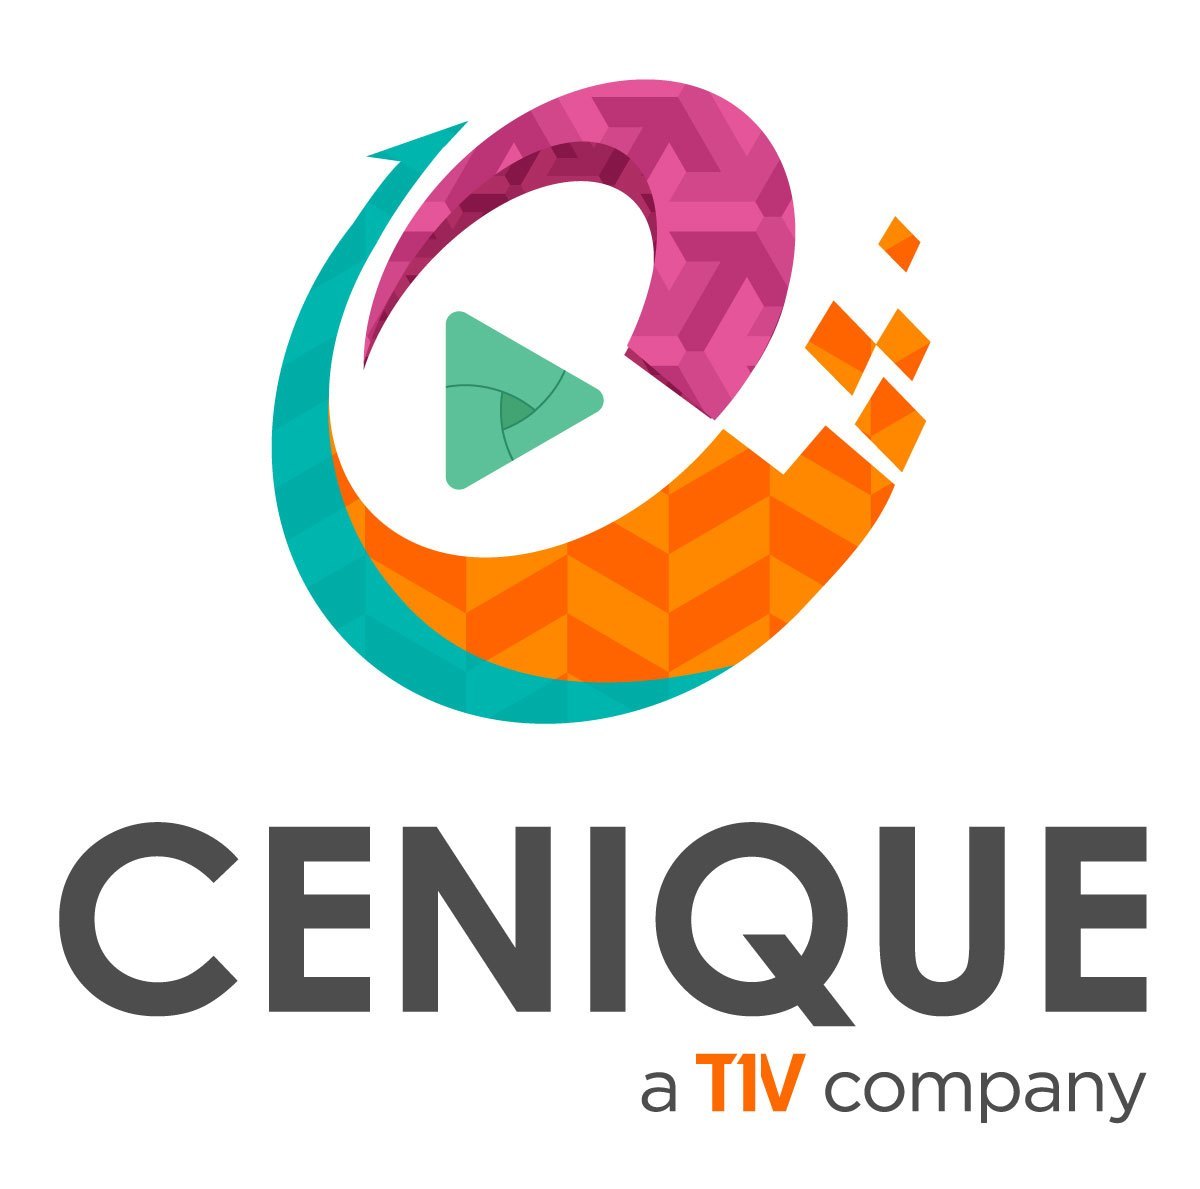 Cenique_Logo_Full_2016